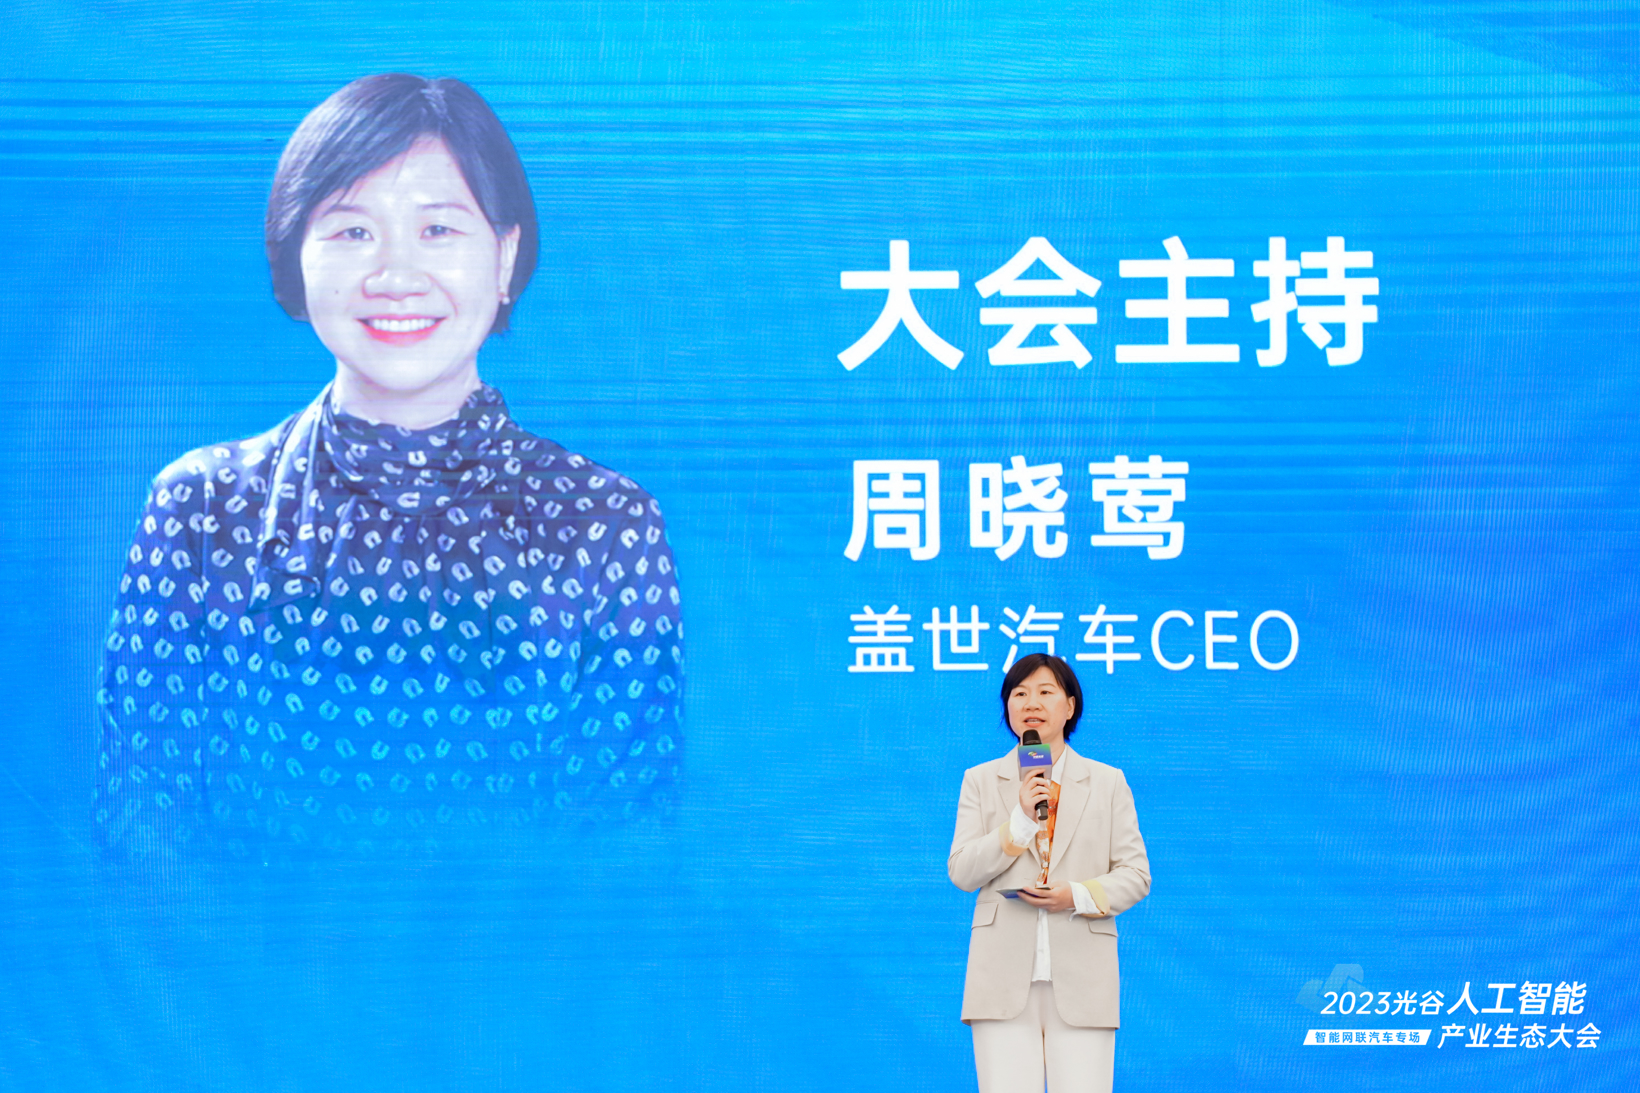 AI点亮中国光谷 | “2023光谷人工智能产业生态大会——智能网联汽车专场”于武汉成功举办